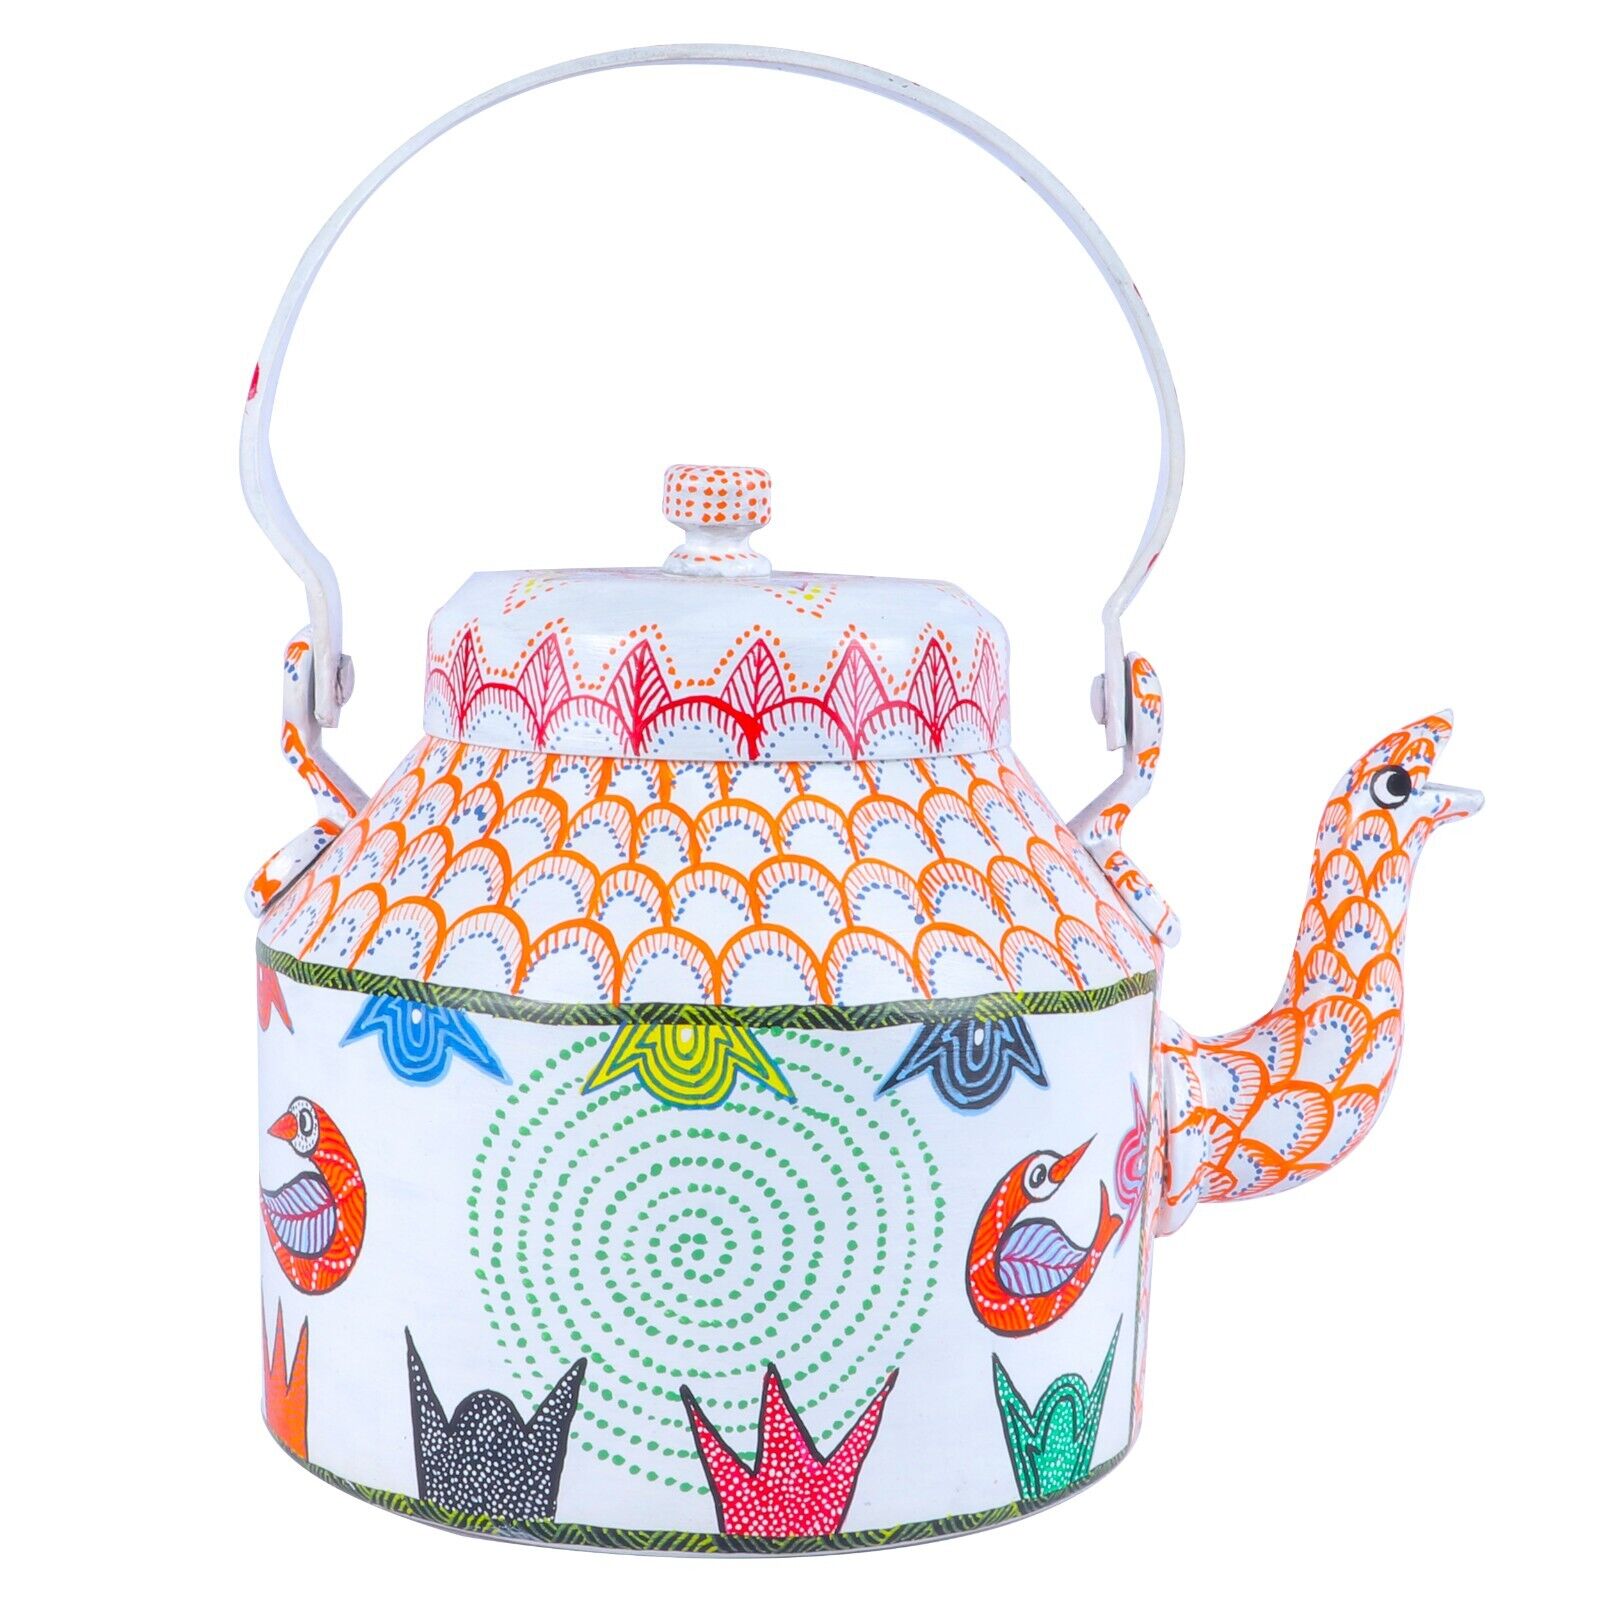 Gond Painted Decorative Teapot Kettle Antique Decorative Vintage Art Piece